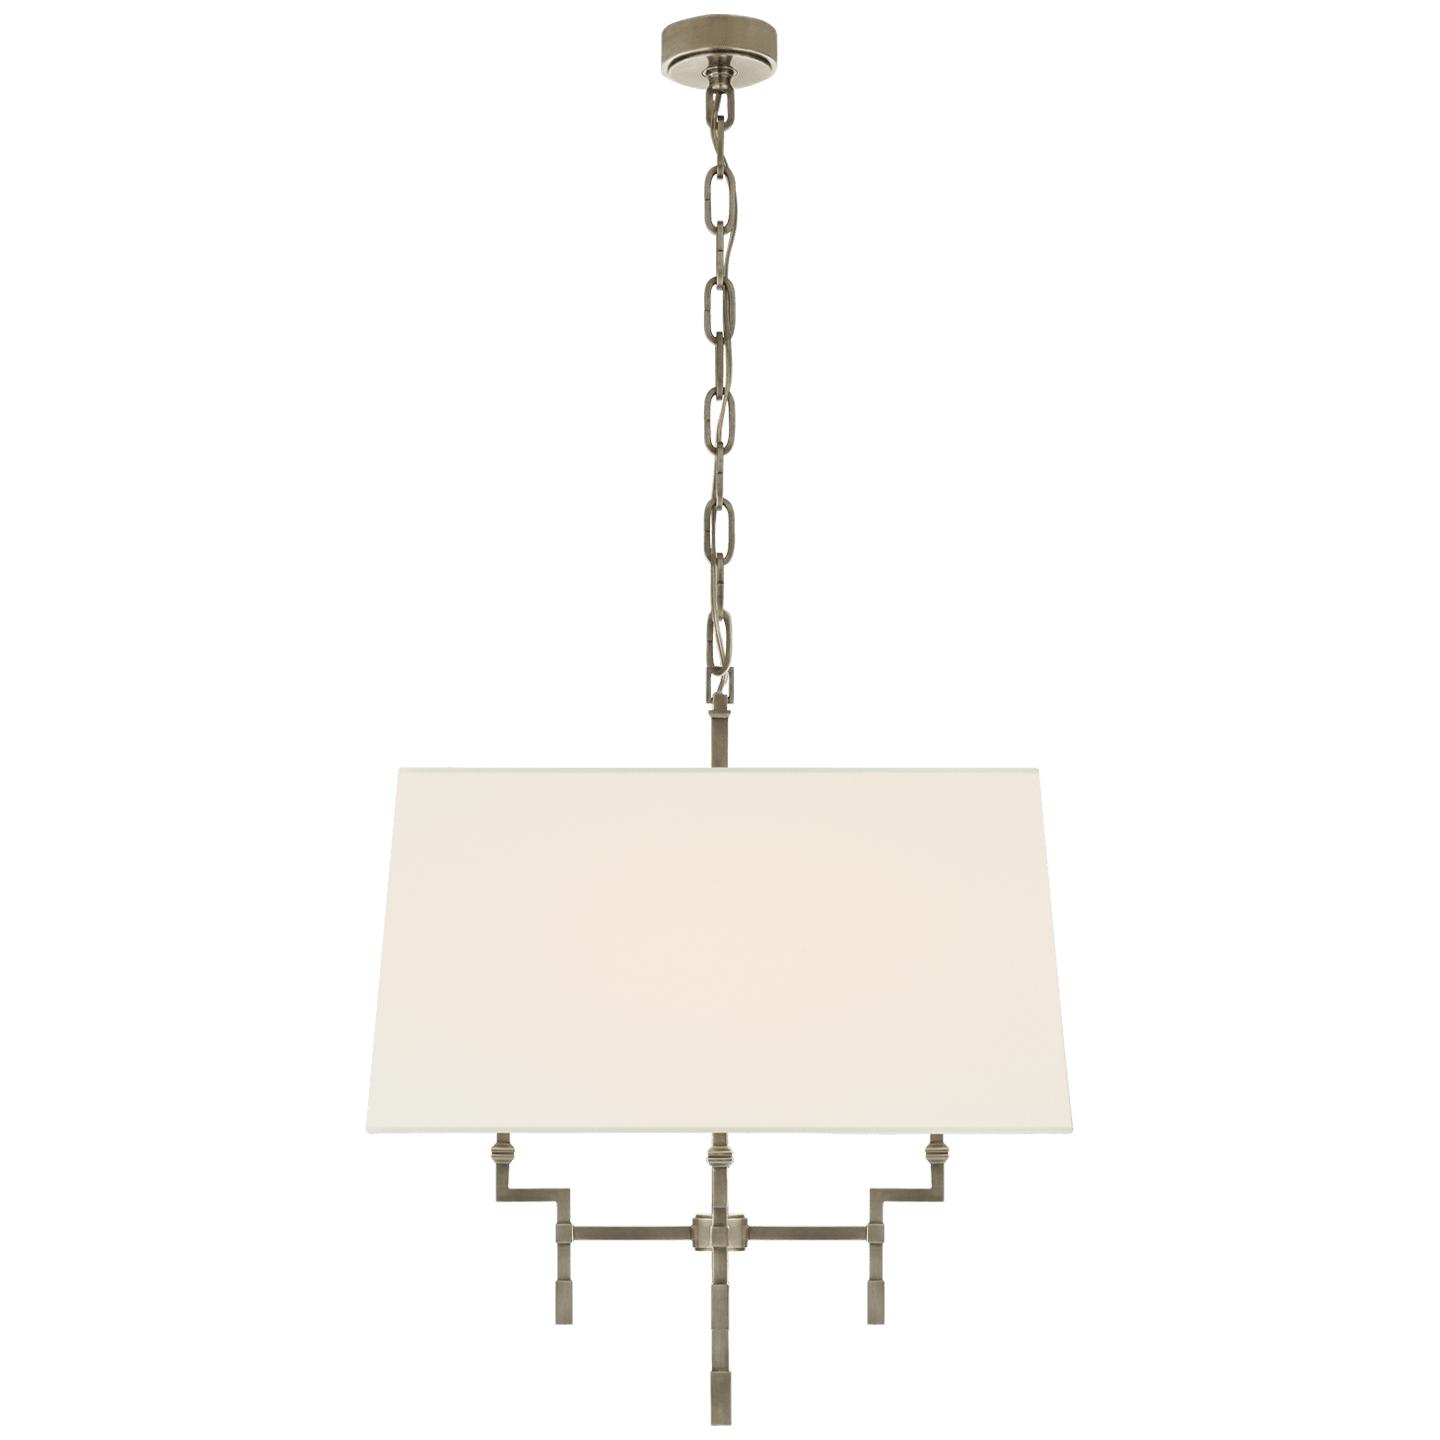 Купить Подвесной светильник Jane Medium Hanging Shade в интернет-магазине roooms.ru